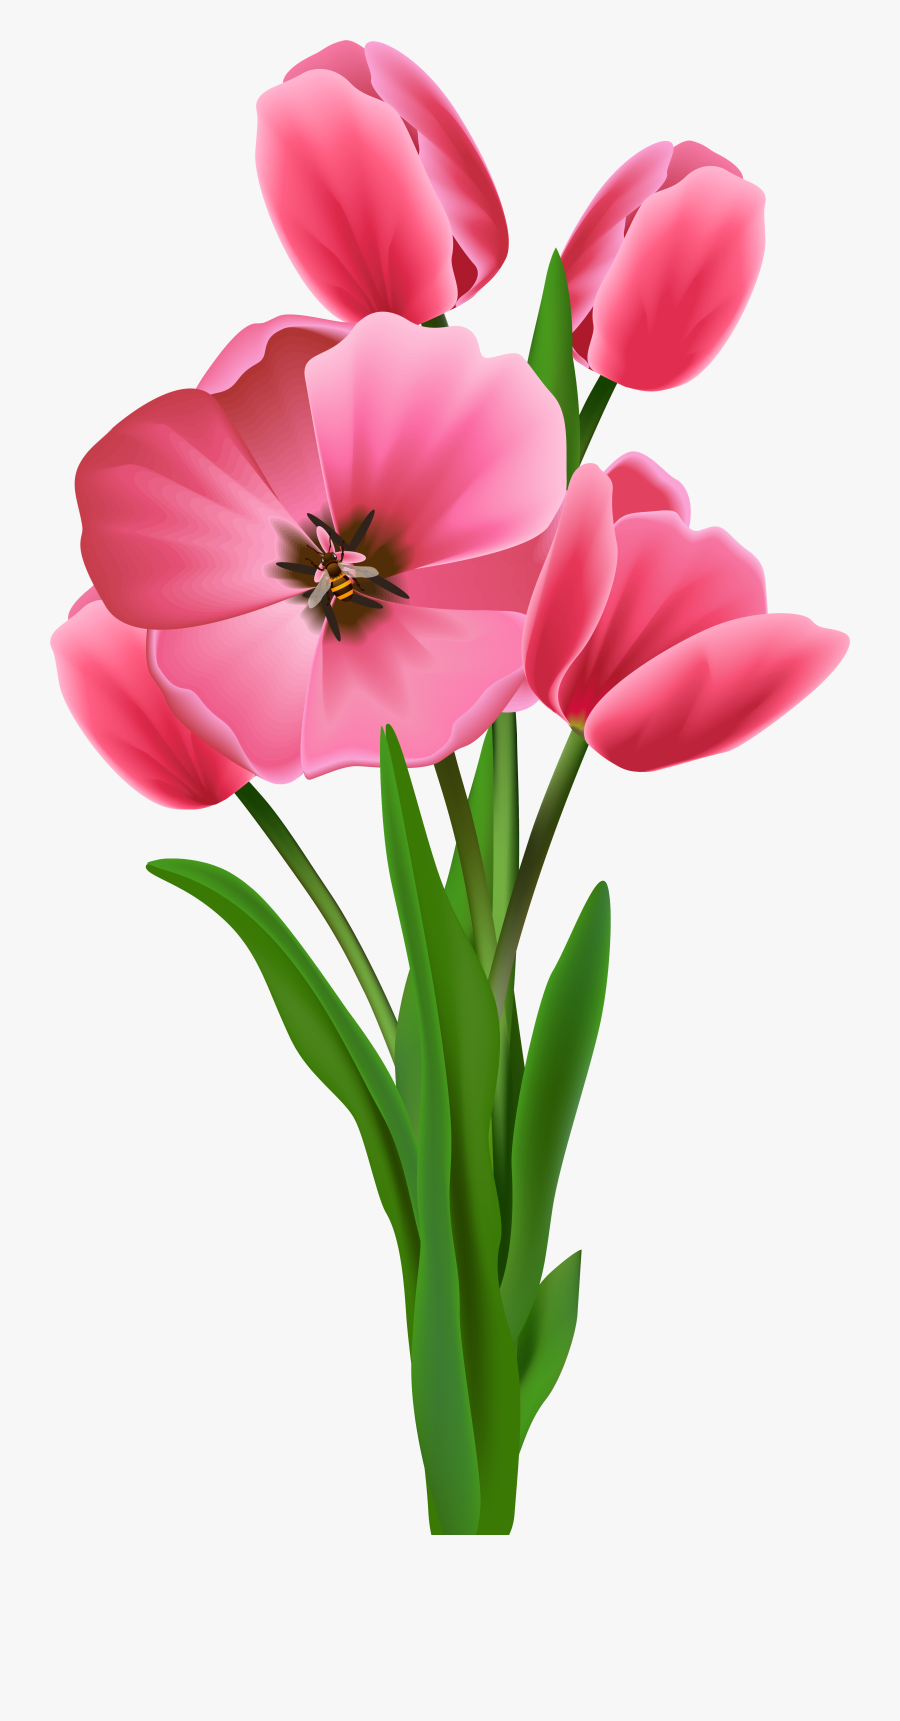 Tulip Transparent Vintage - Prayers Happy New Month Messages, Transparent Clipart